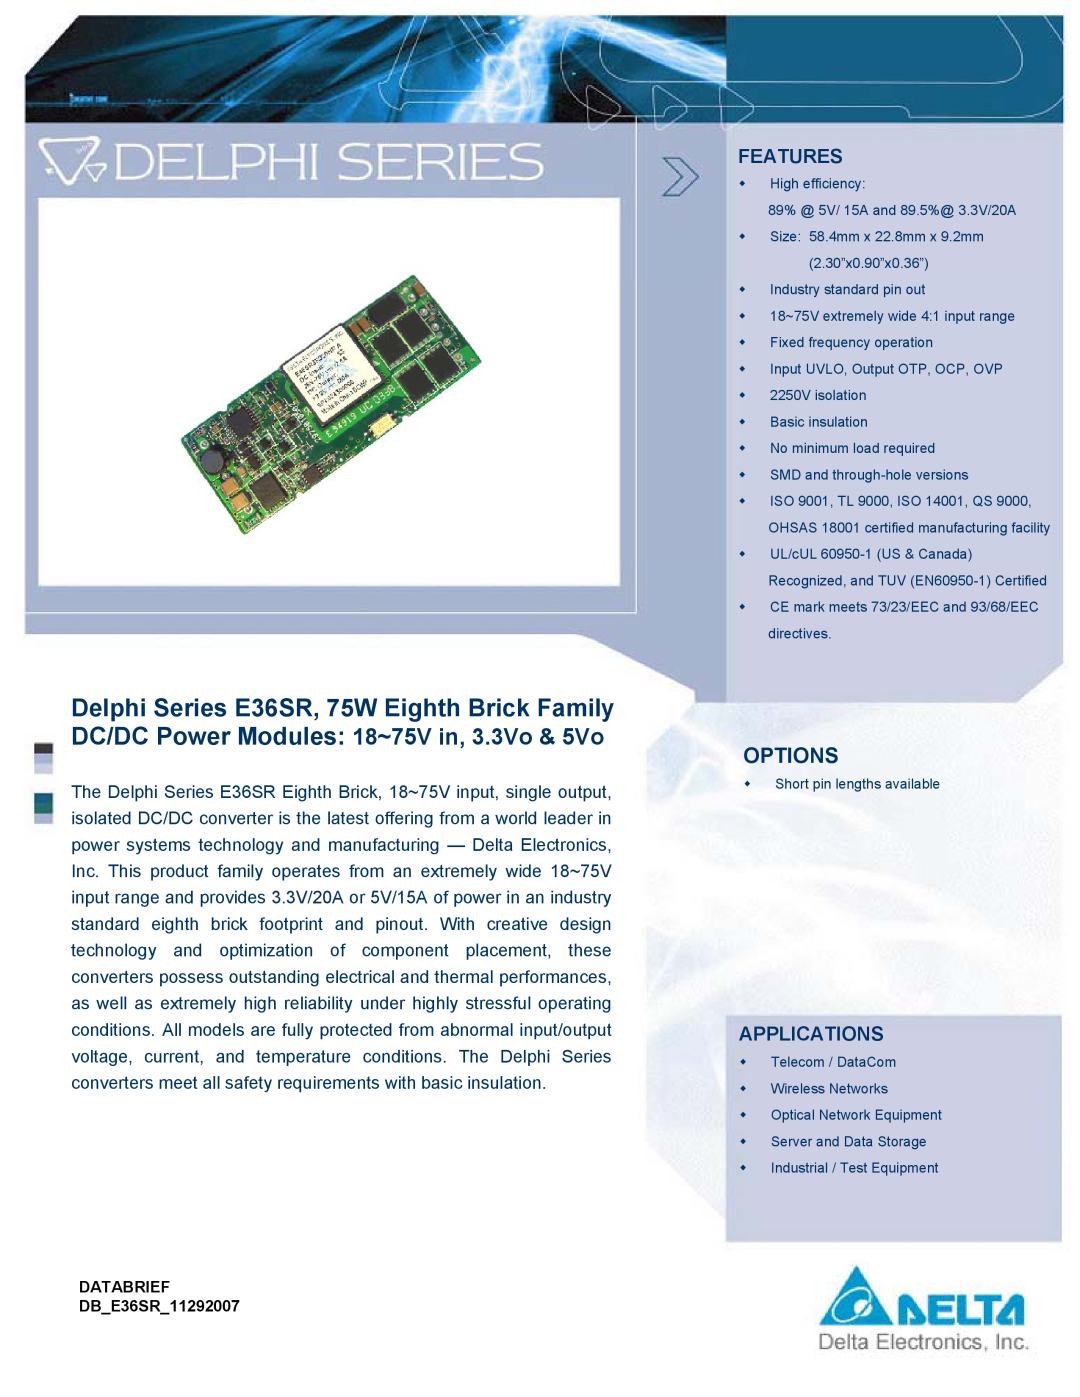 Delta Electronics E36SR manual Features, Applications, Options 